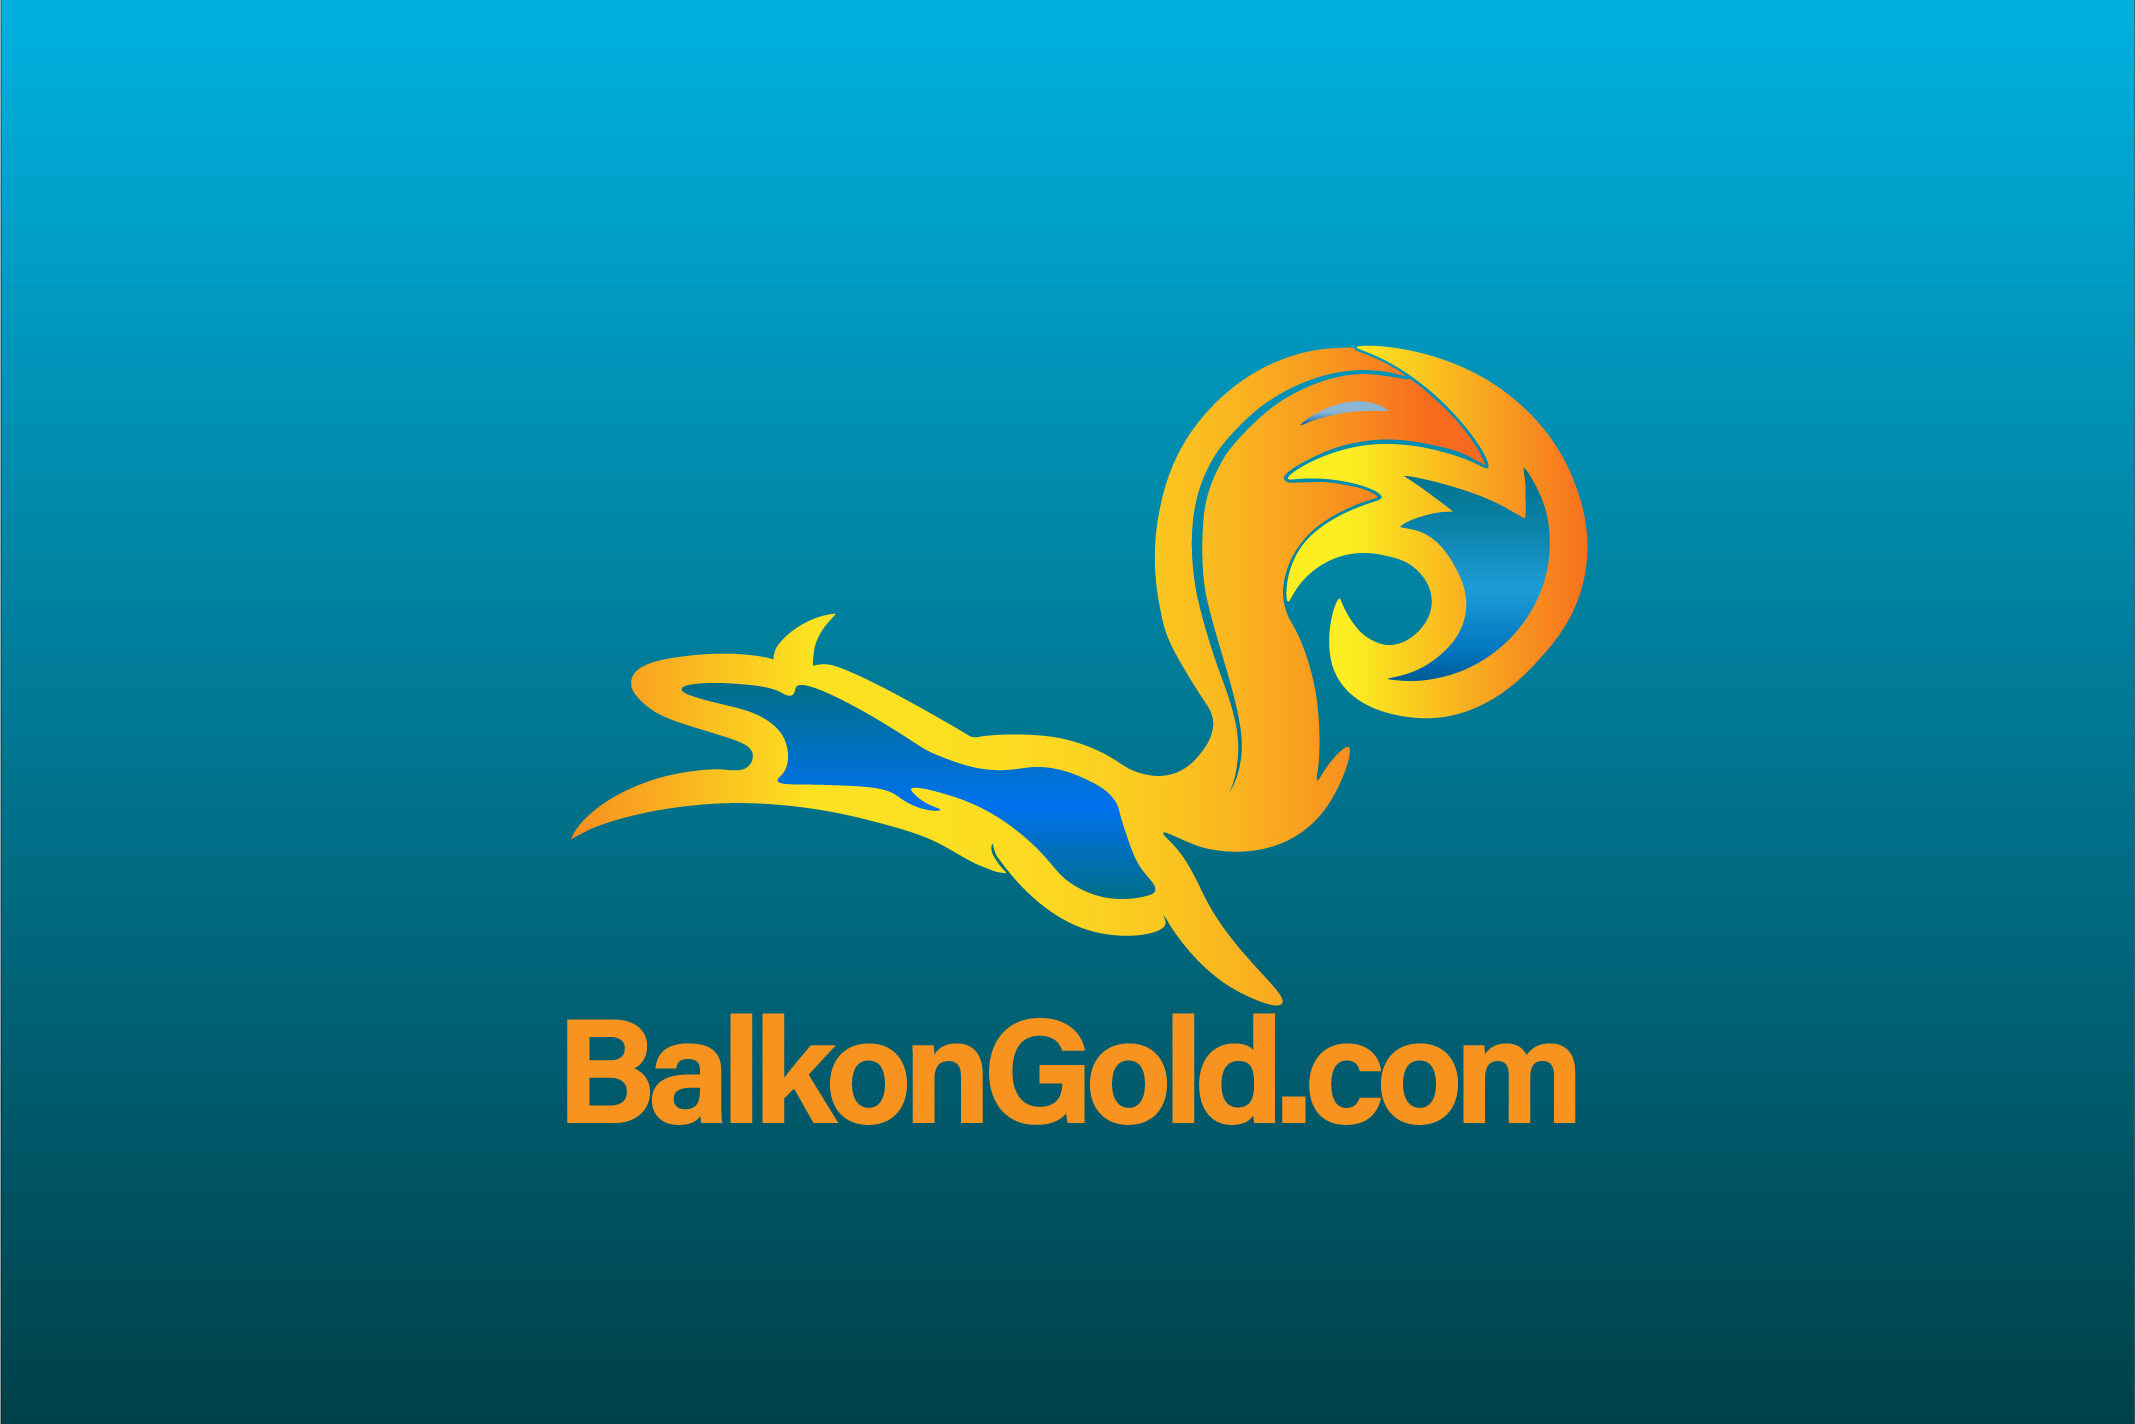 BalkonGold.com